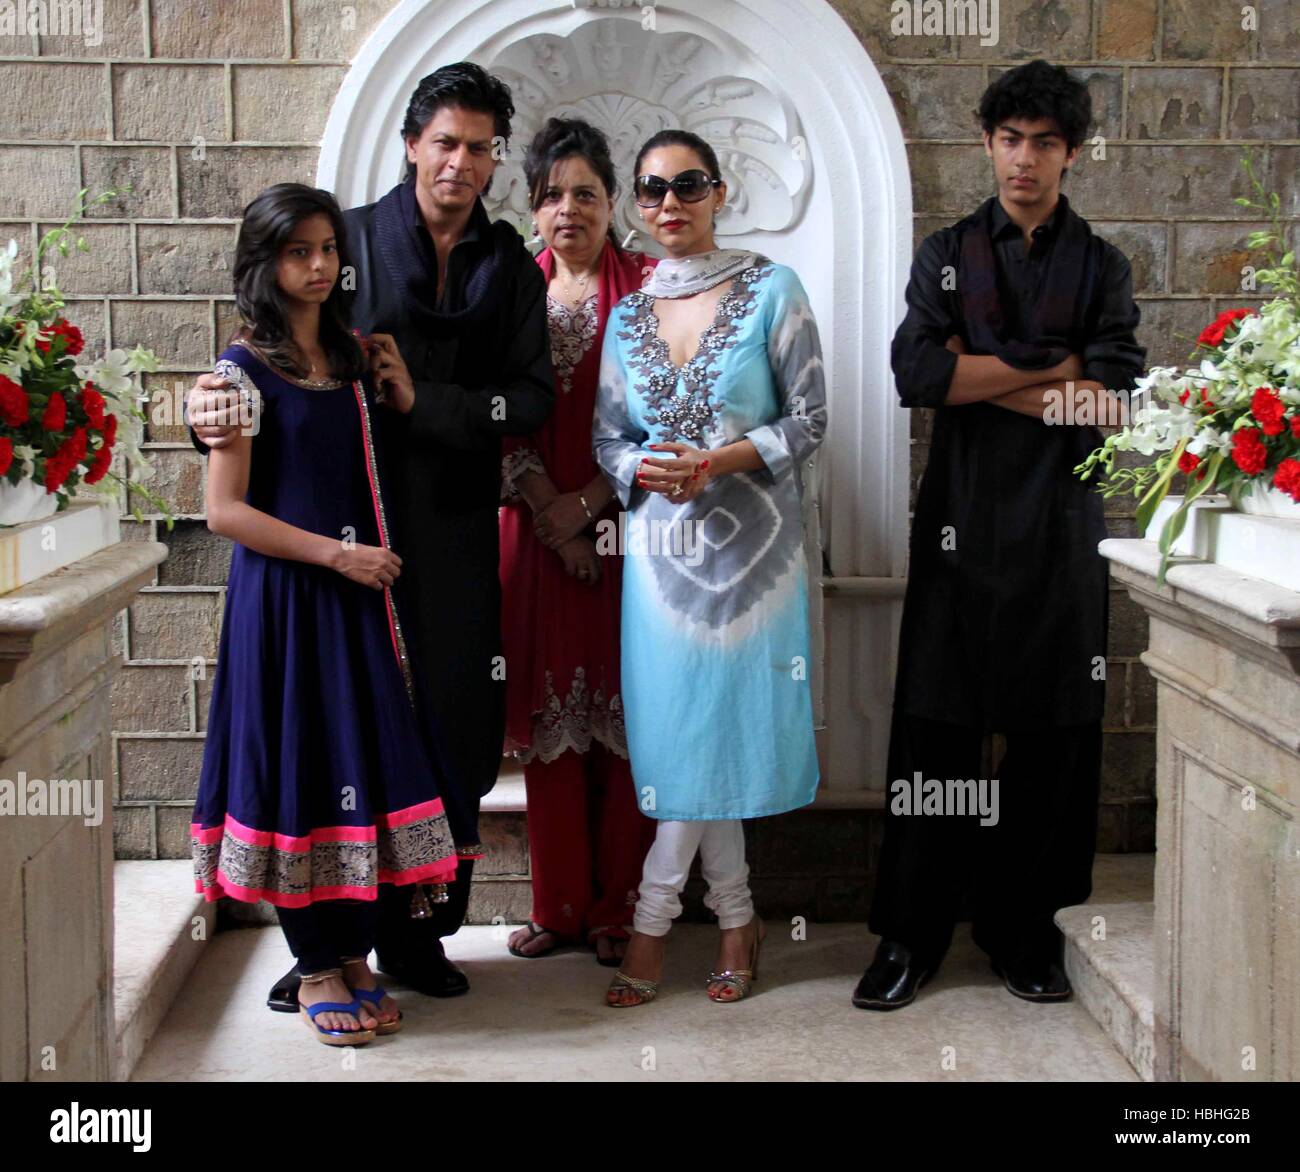 Indischer Bollywood-Schauspieler Shah Rukh Khan mit Familie Suhana Khan, Tochter Shahnaz Lalarukh, Schwester, Gauri Khan, Ehefrau und Sohn Aryan Khan, in seinem Haus Mannat, Bandra, Mumbai, Indien, indische Familie Stockfoto